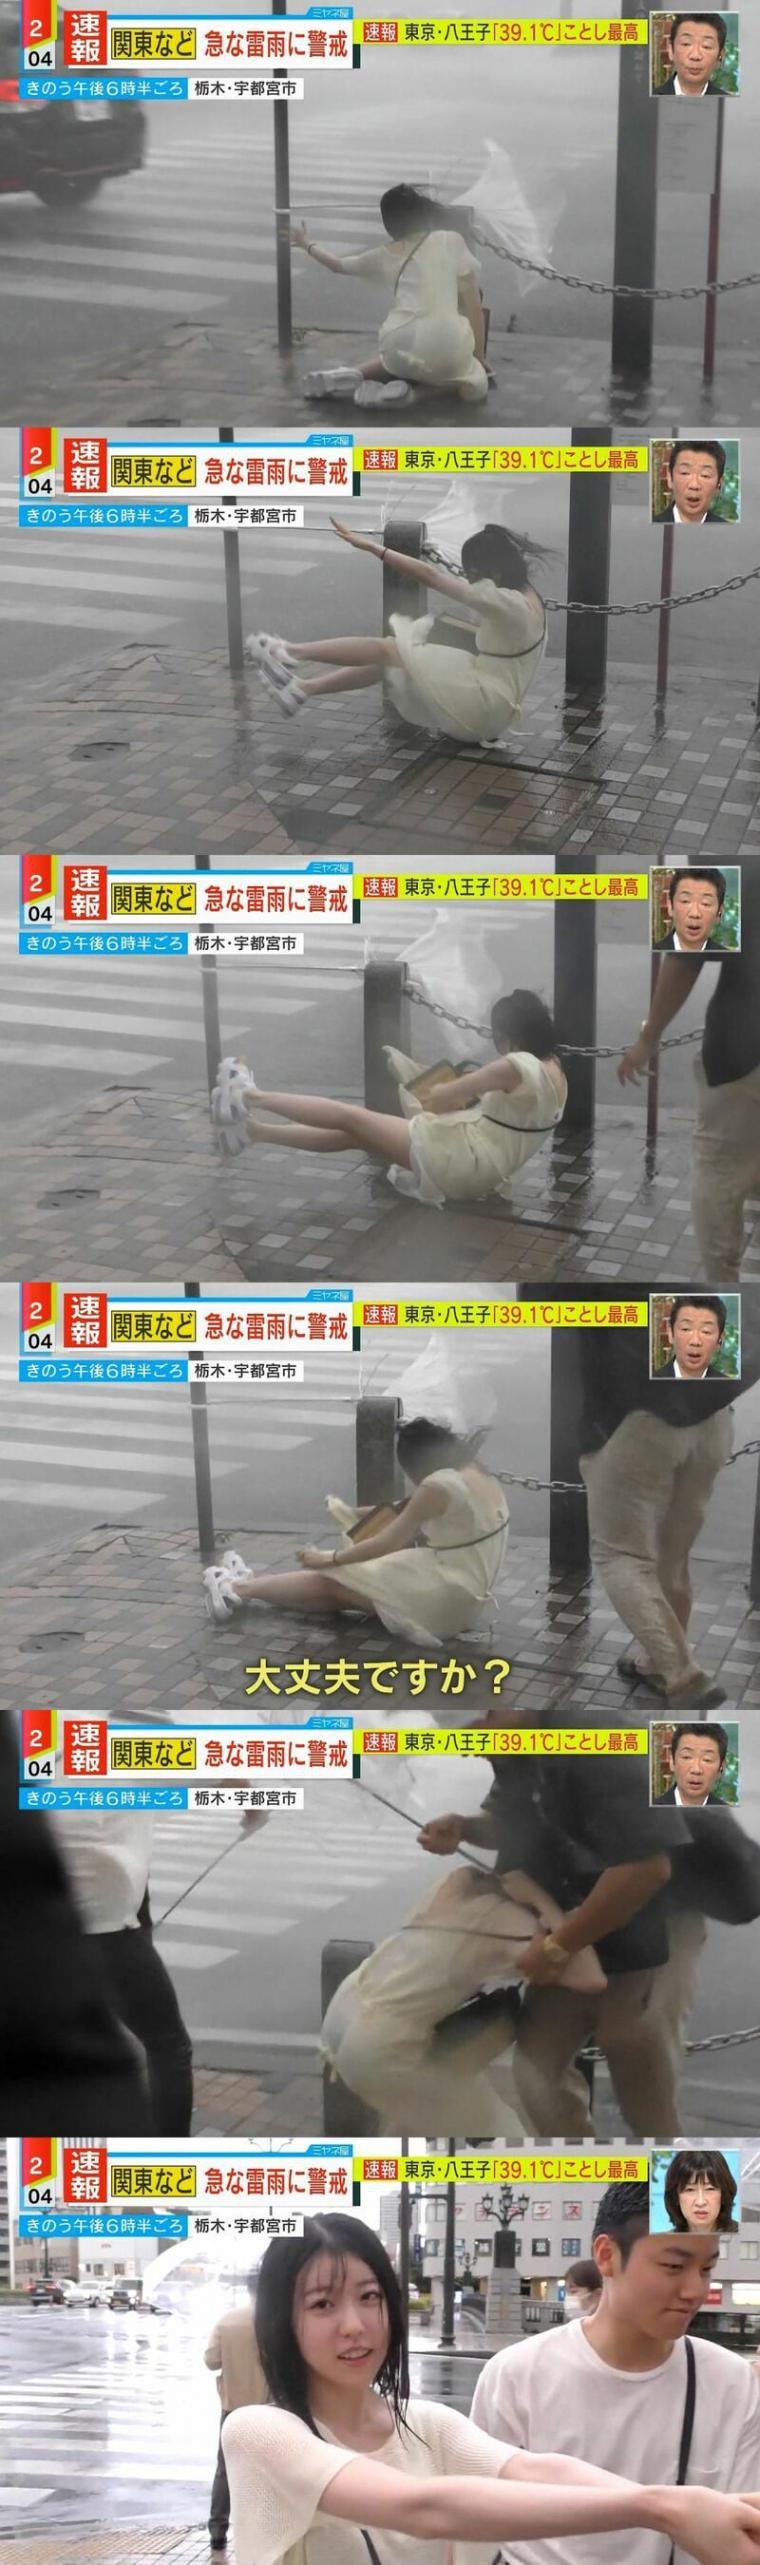 台風で倒れる日本の妻子